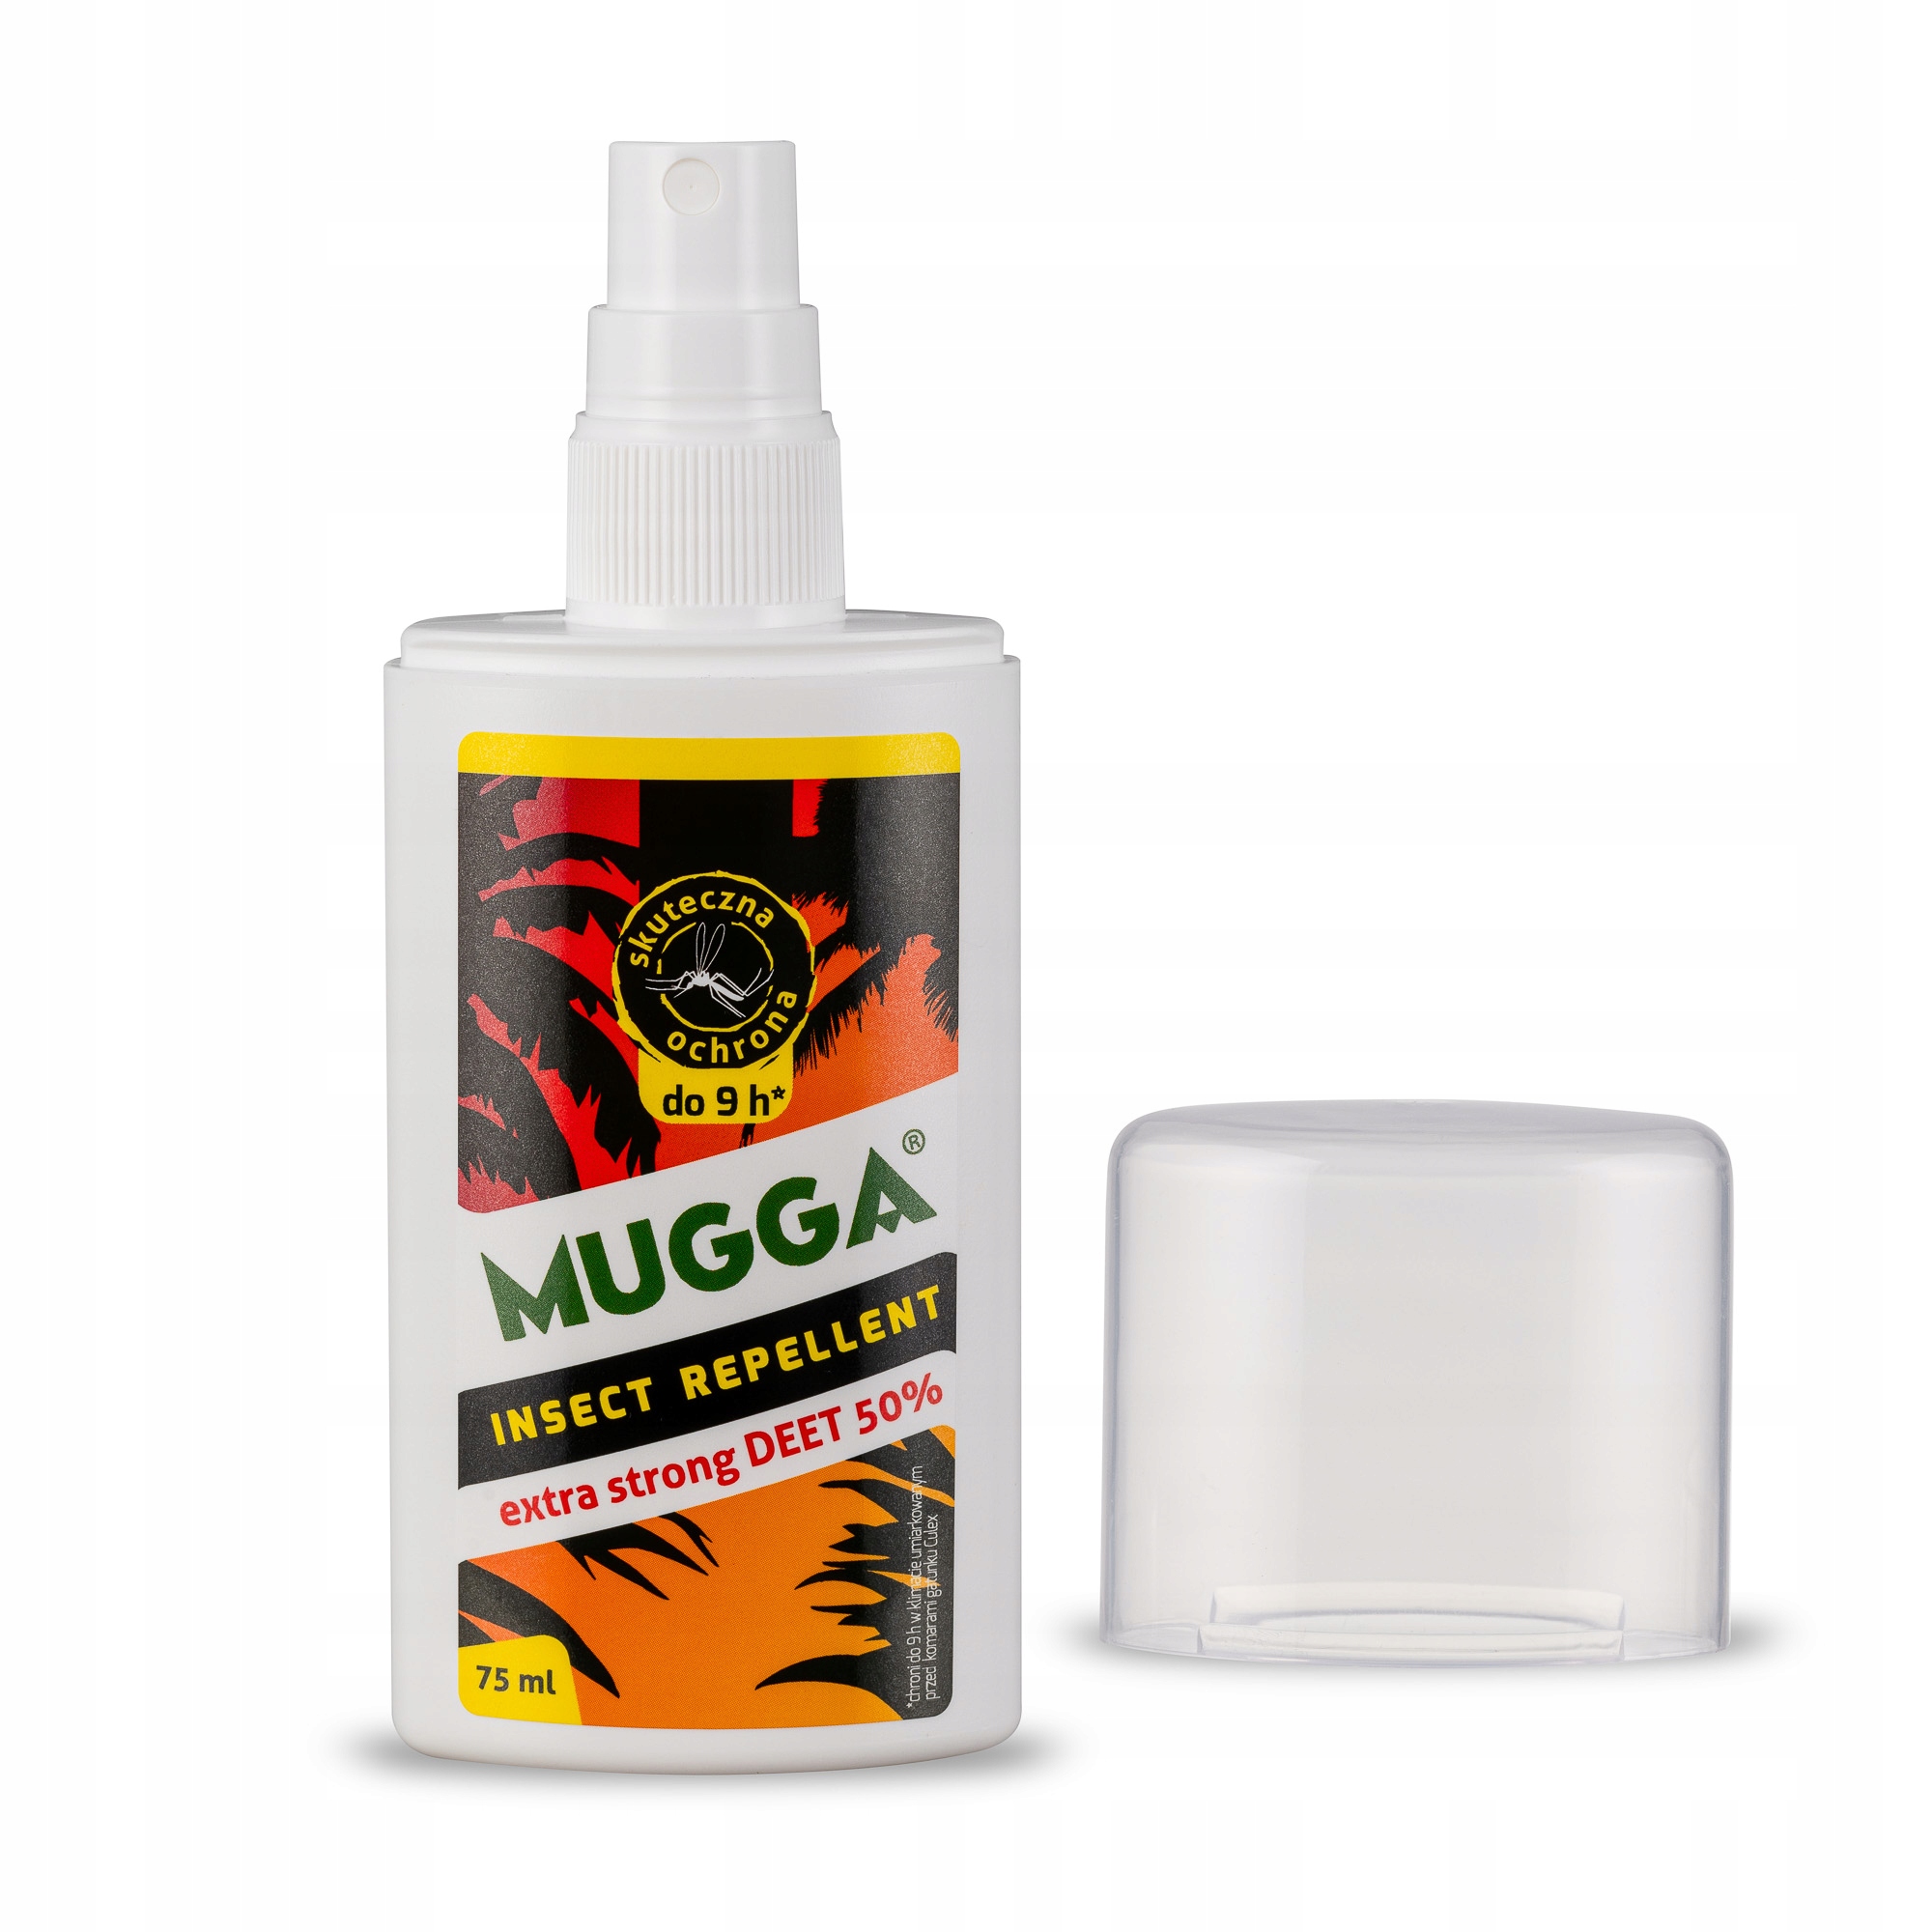 Mugga DEET 50%, комары, мыши, насекомые